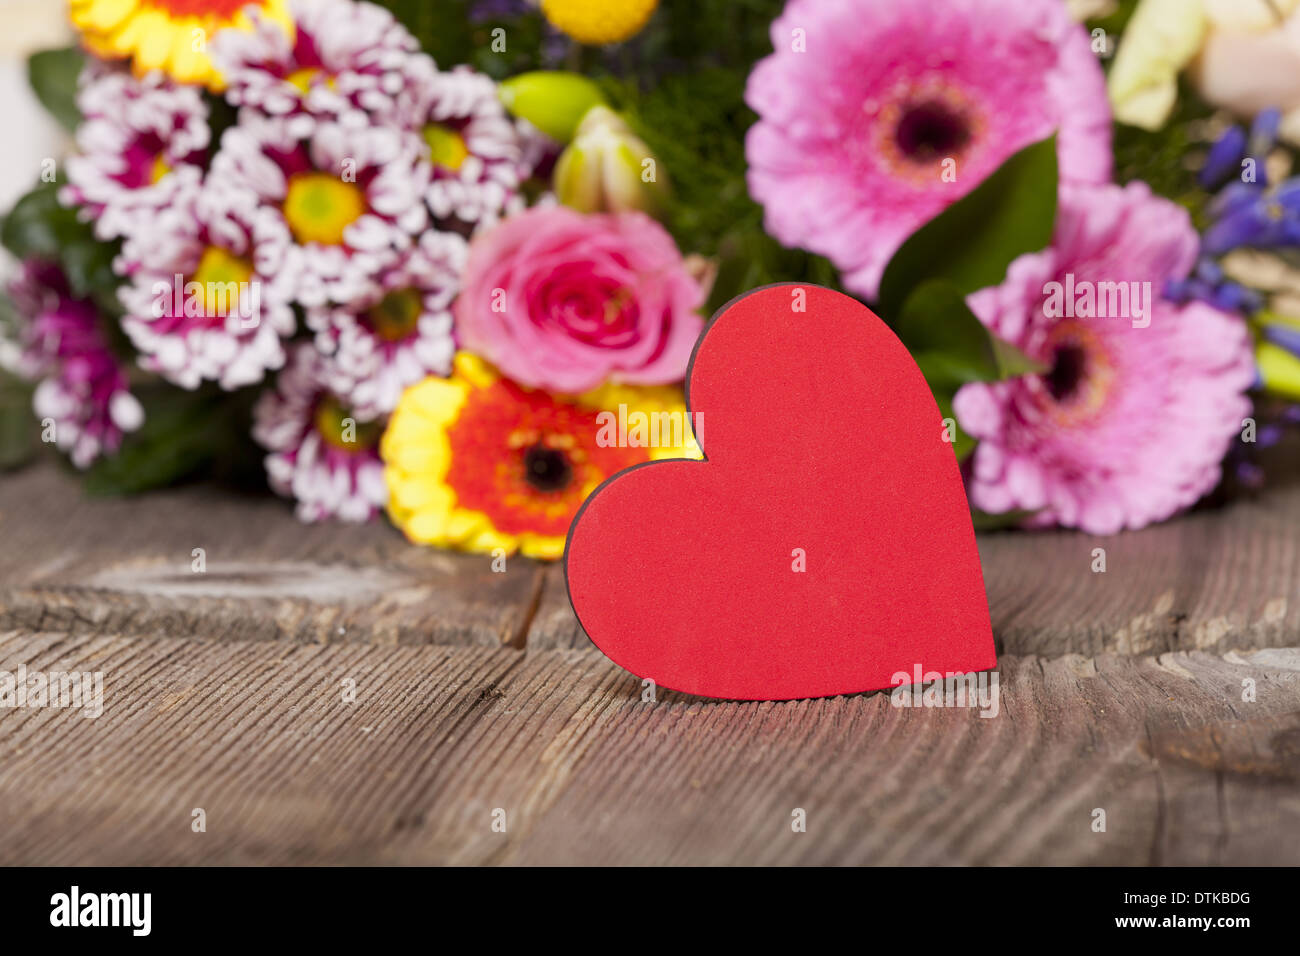 Saluti di fiori con un cuore rosso come simbolo nella parte anteriore di un  bouquet di